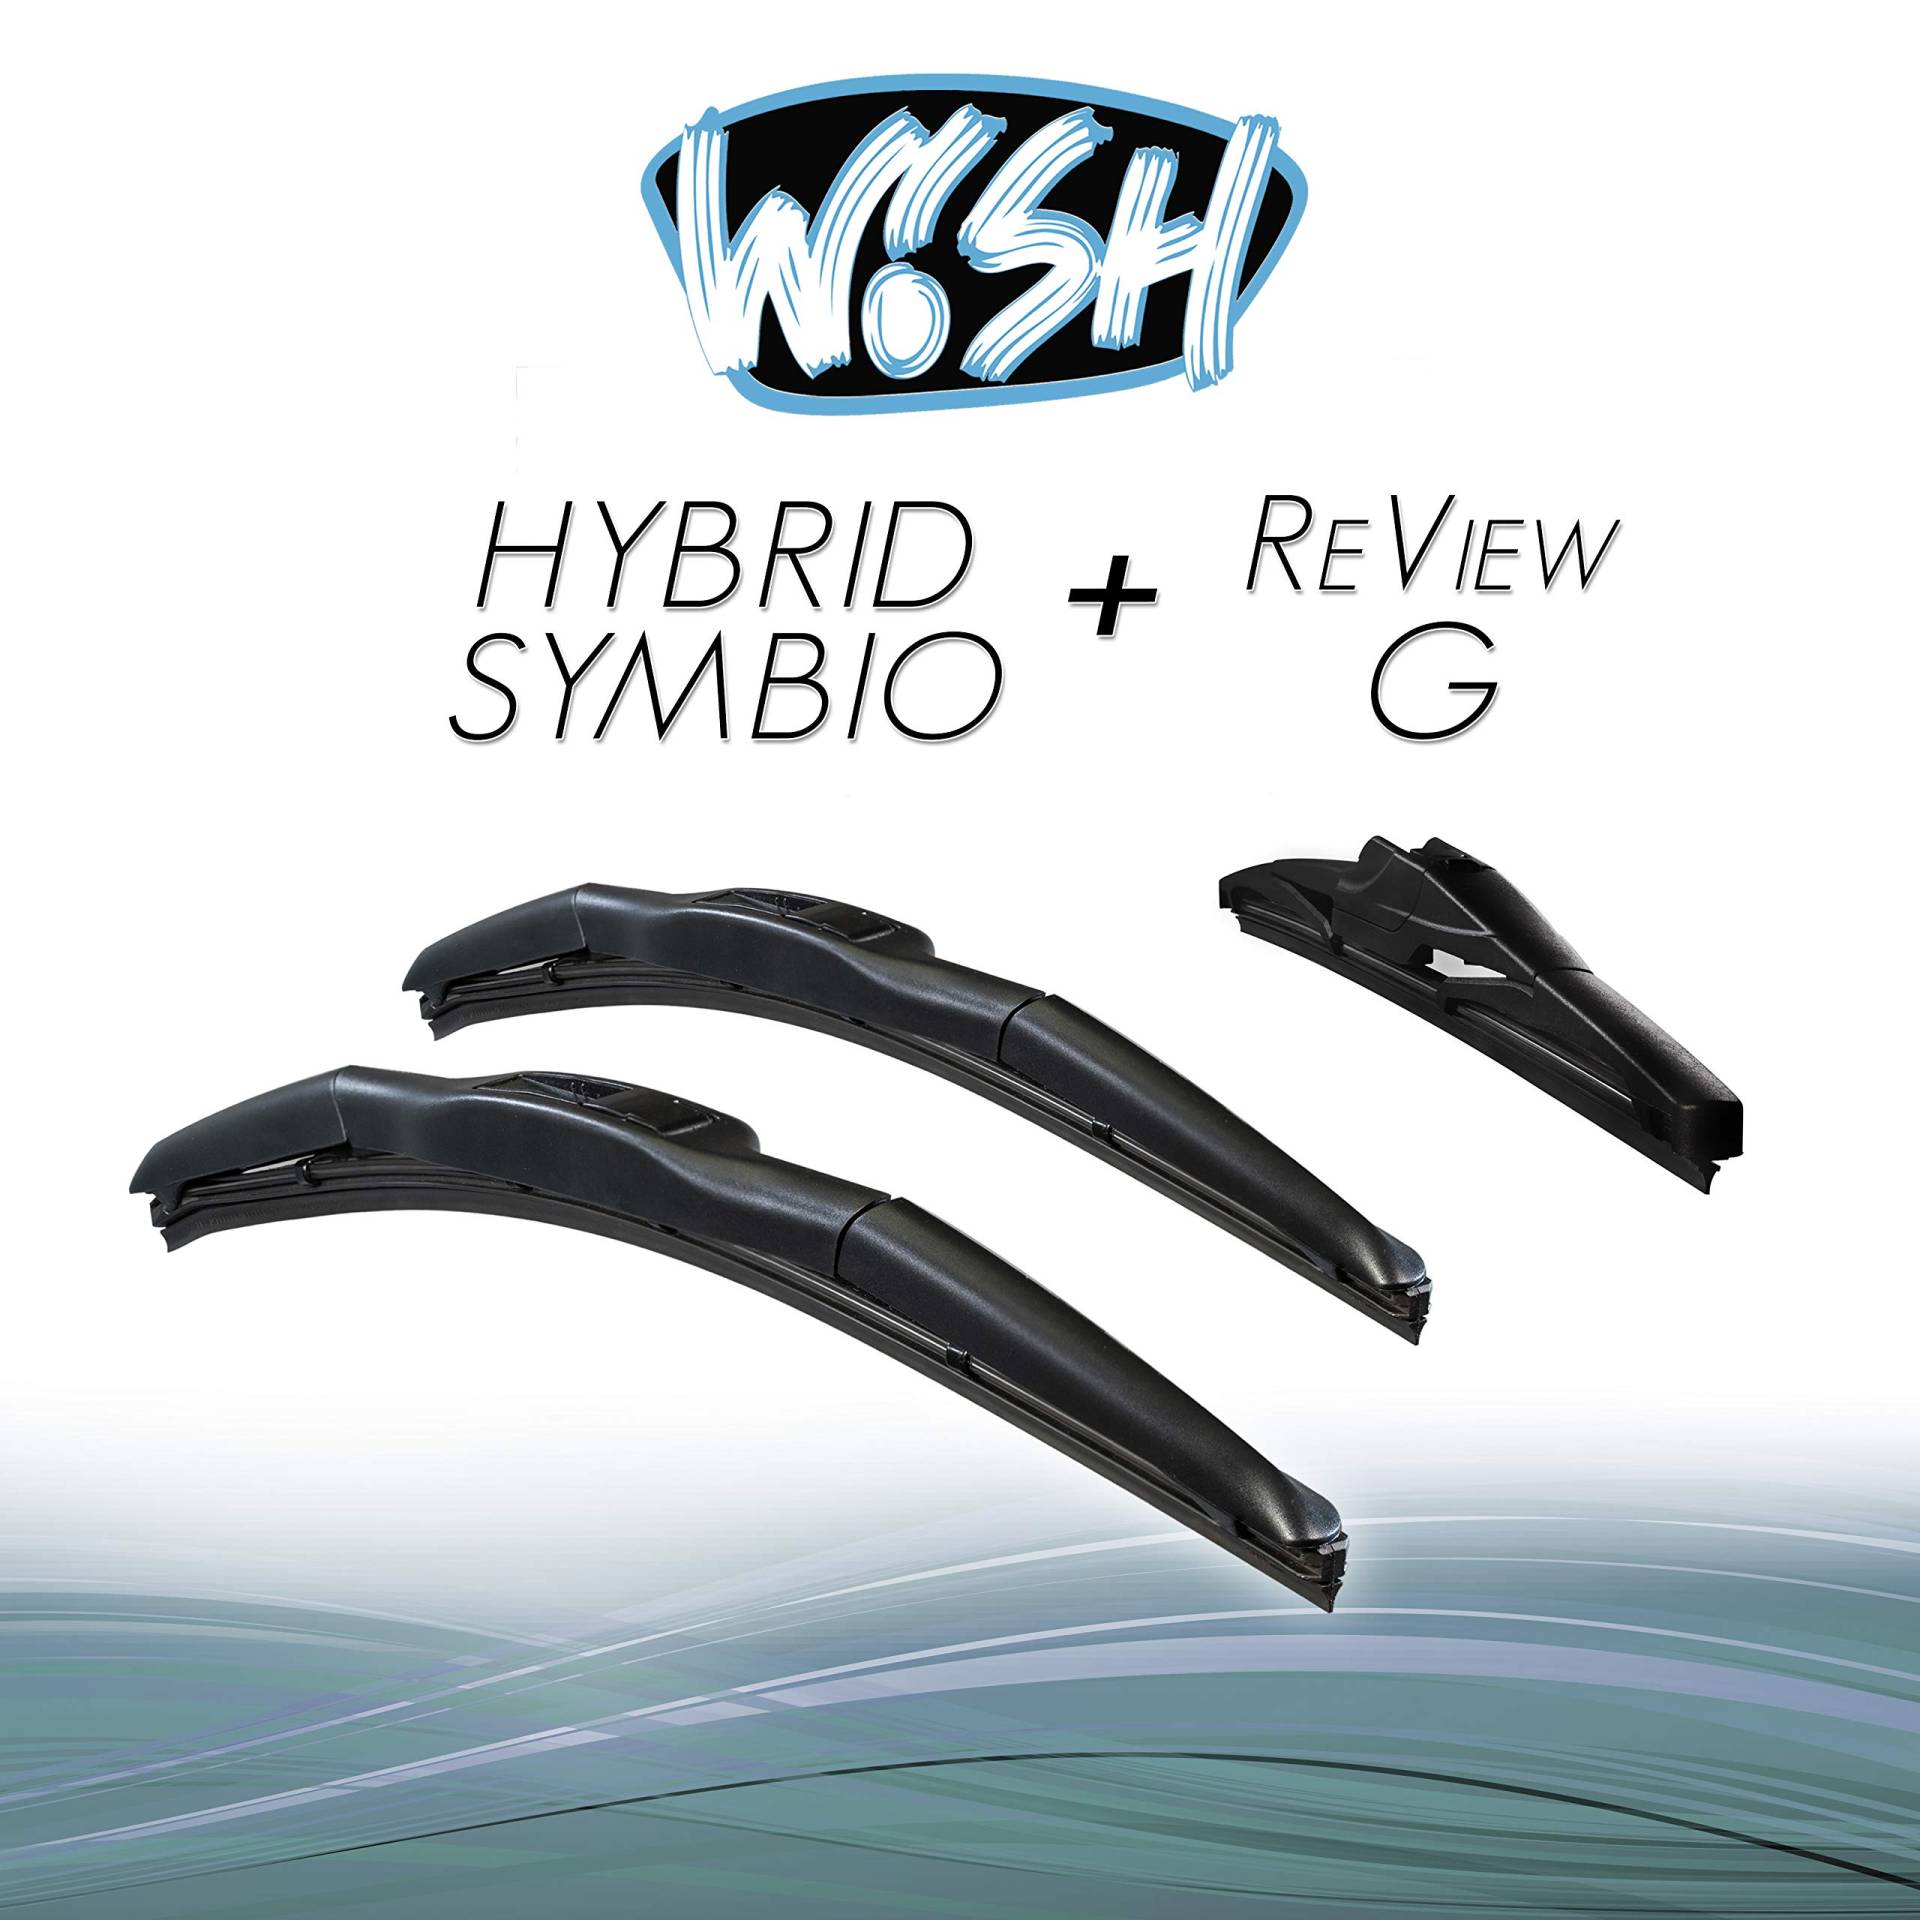 Wish® Hybrid Symbio Satz Front + Heck Scheibenwischer Länge: 26" 650mm / 18" 450mm / 14" 350mm Wischblätter Vorne und Hinten Hybrid-Scheibenwischer + Review G HS26.18.14RG von Wish